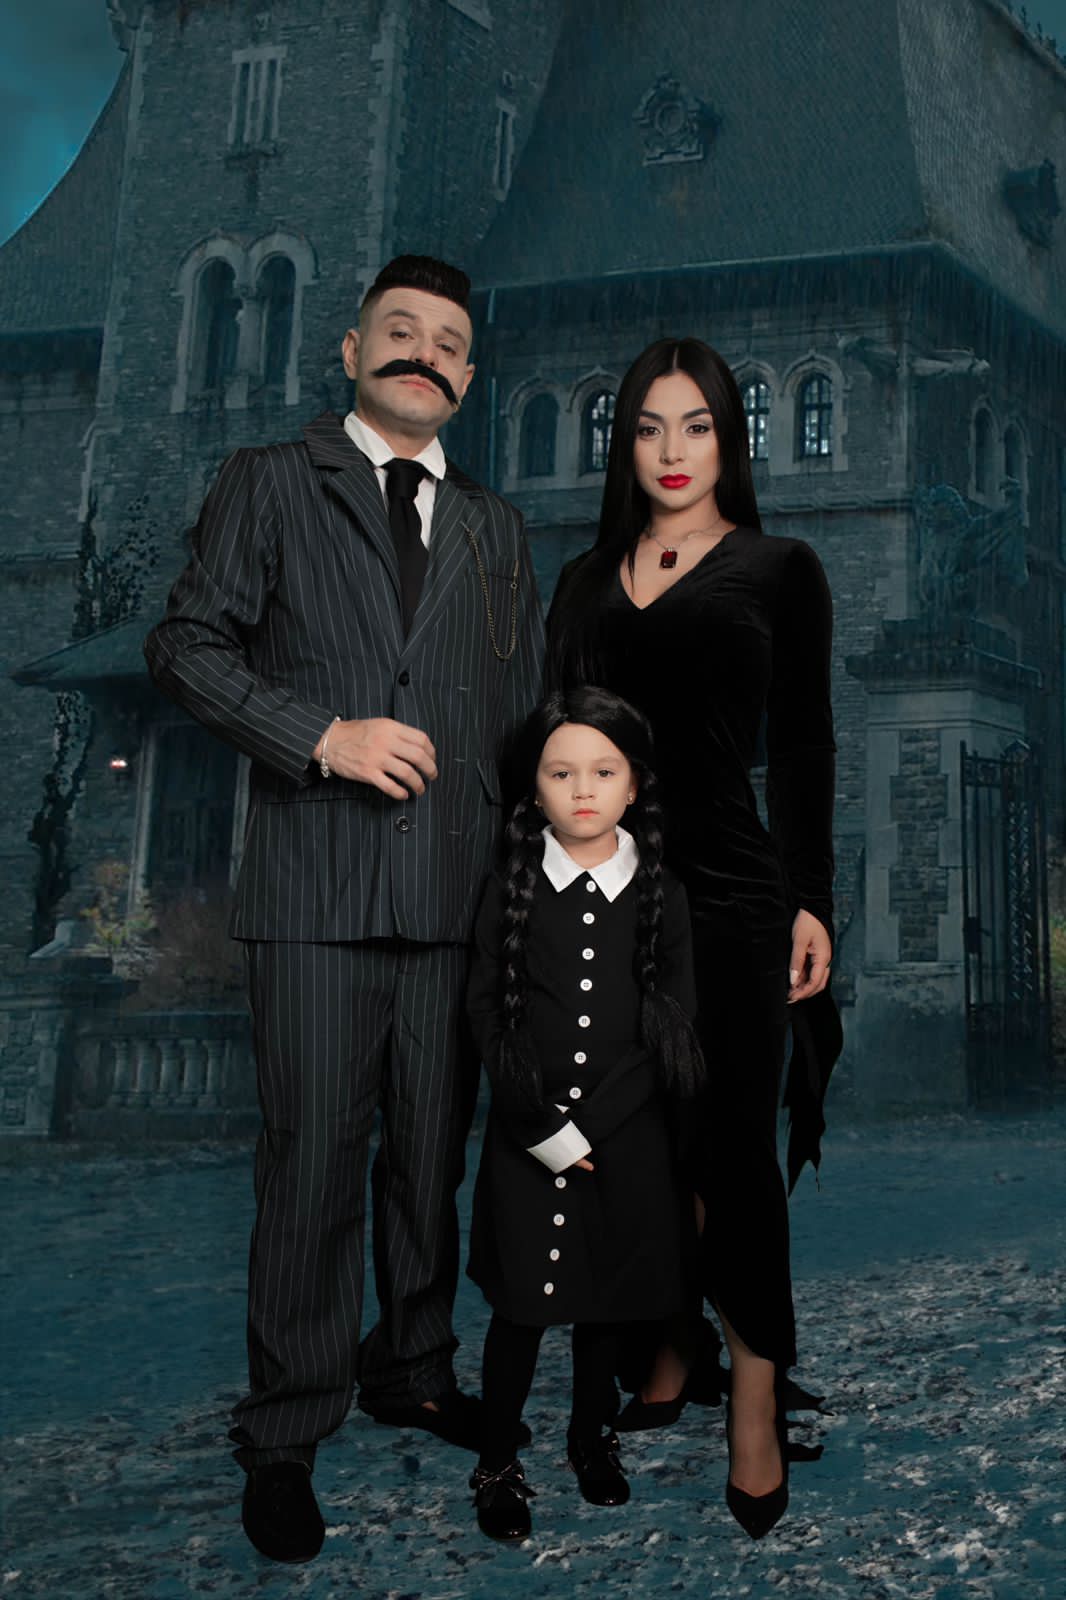 Luifer Cuello y su familia disfrazados de la familia 'Addams'.